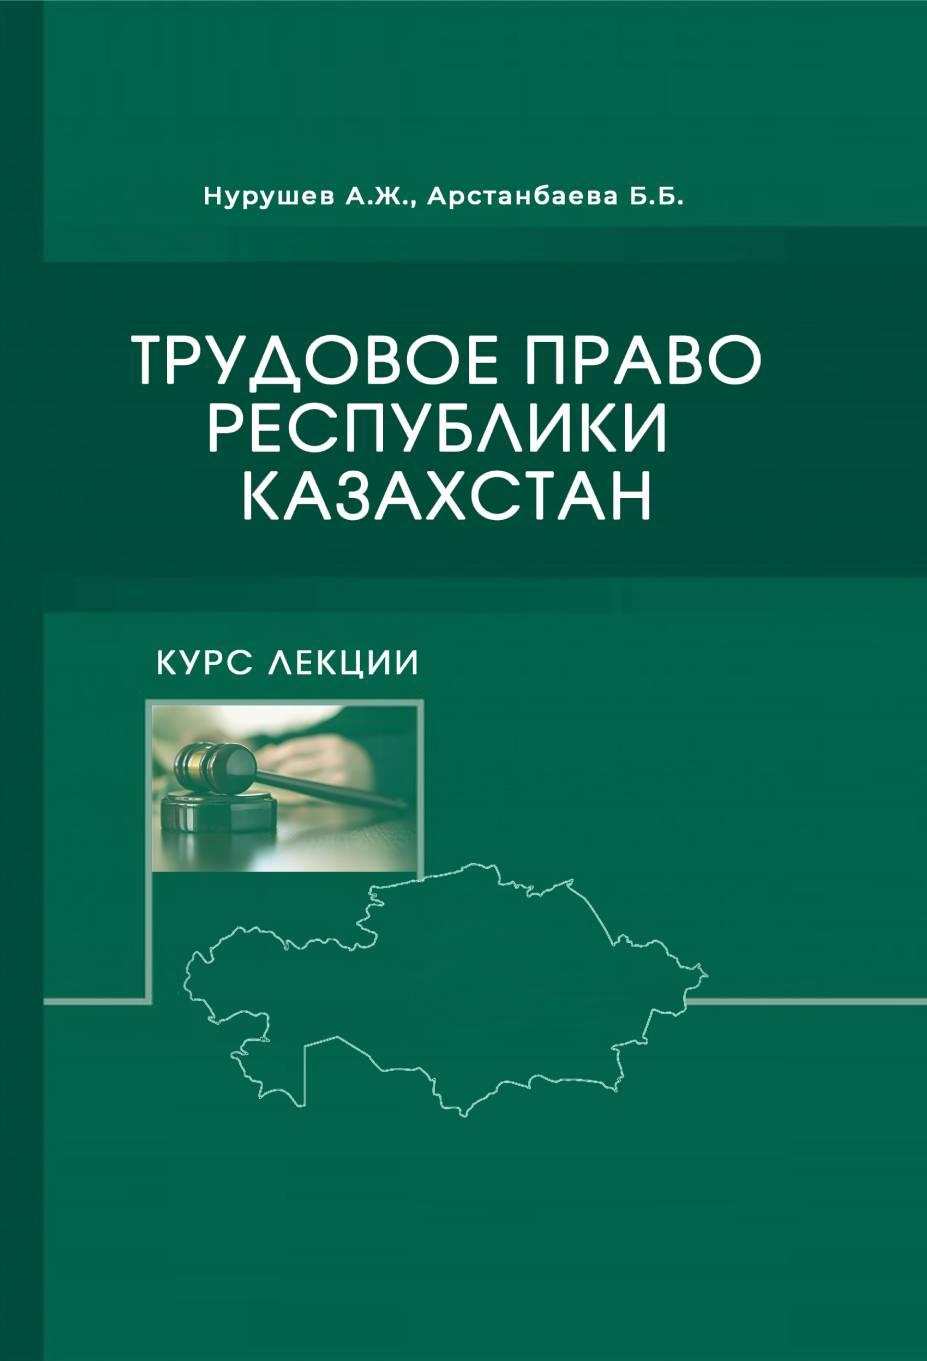 Курс лекции по трудовому праву Республики Казахстан.